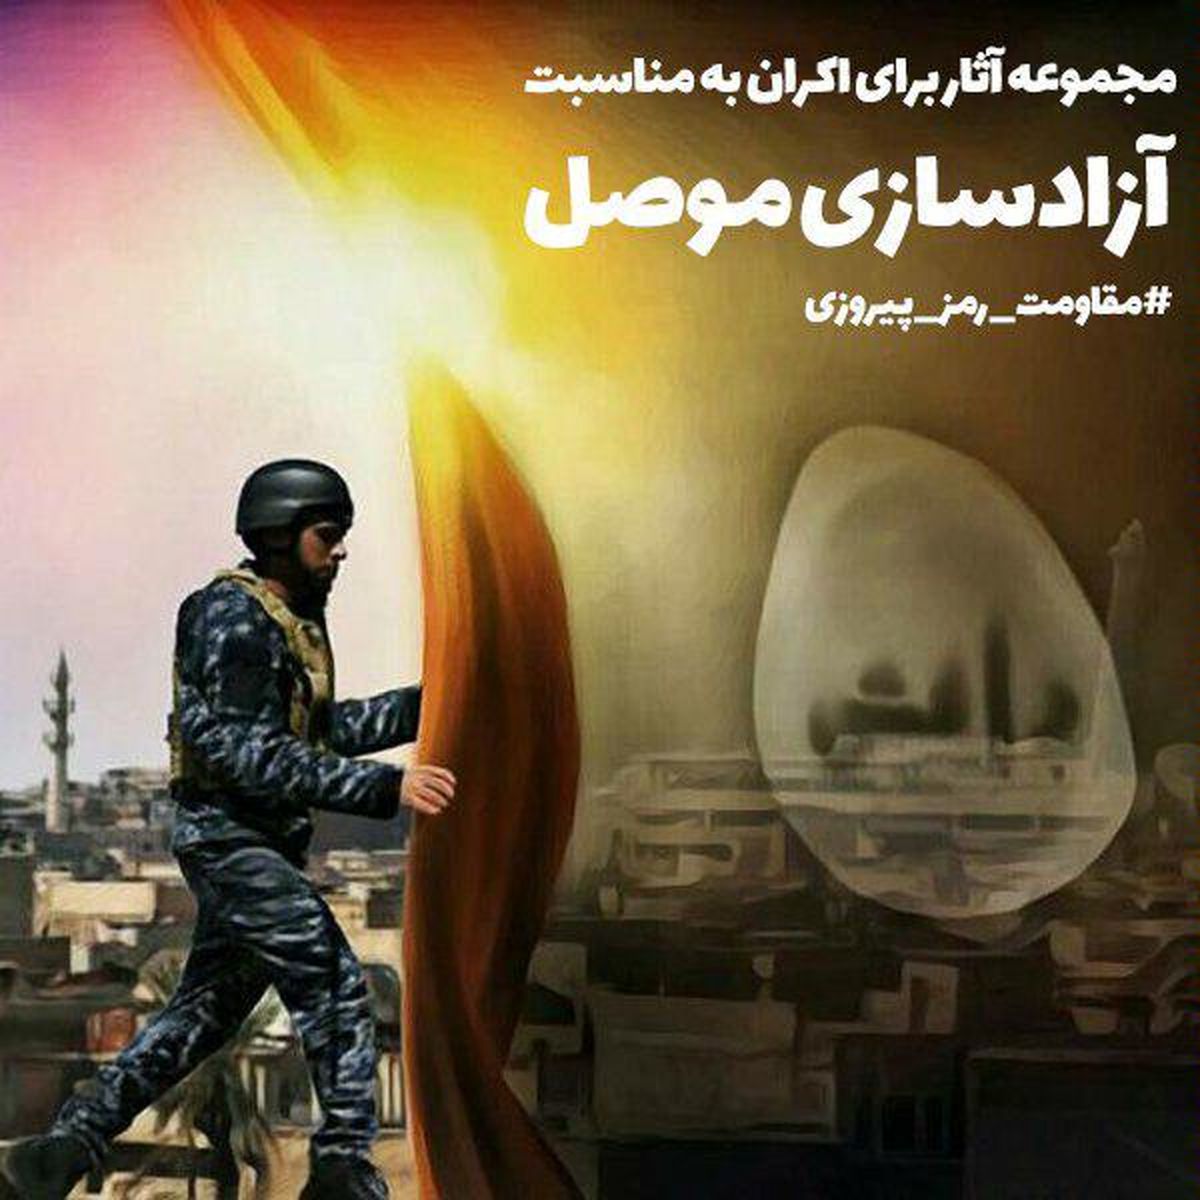 "مقاومت، رمز پیروزی"؛ بسته ویژه جشنواره عمار به بهانه آزادی موصل